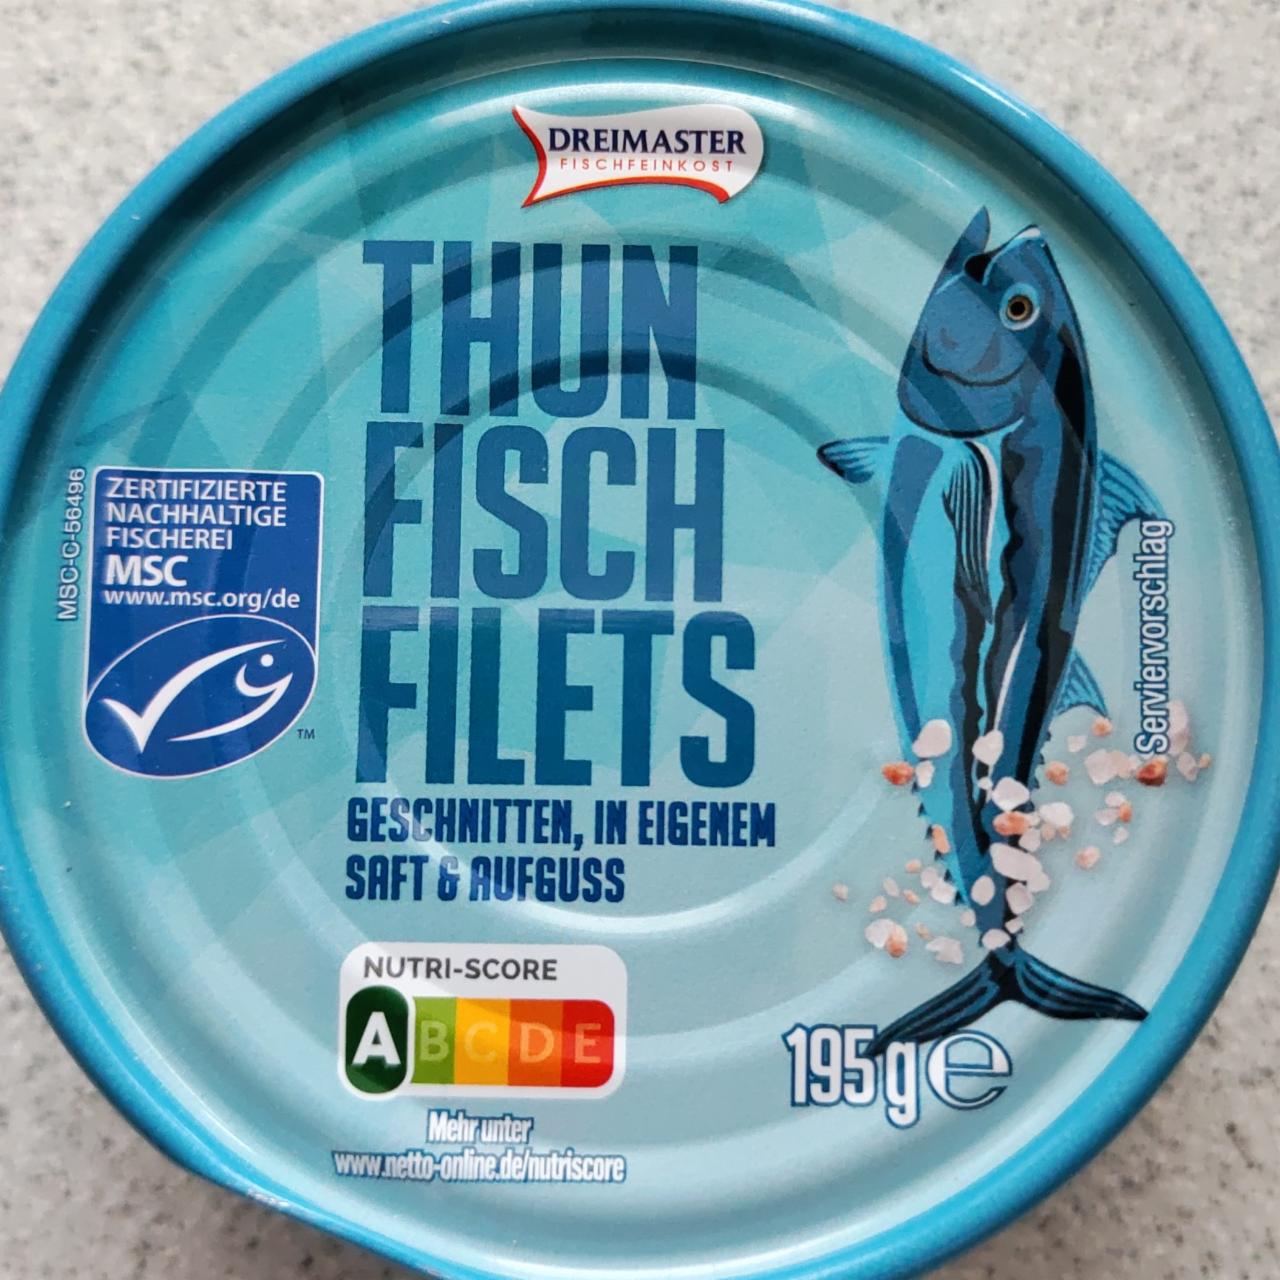 Fotografie - Thunfisch filets geschnitten, in eigenem saft & aufguss Dreimaster